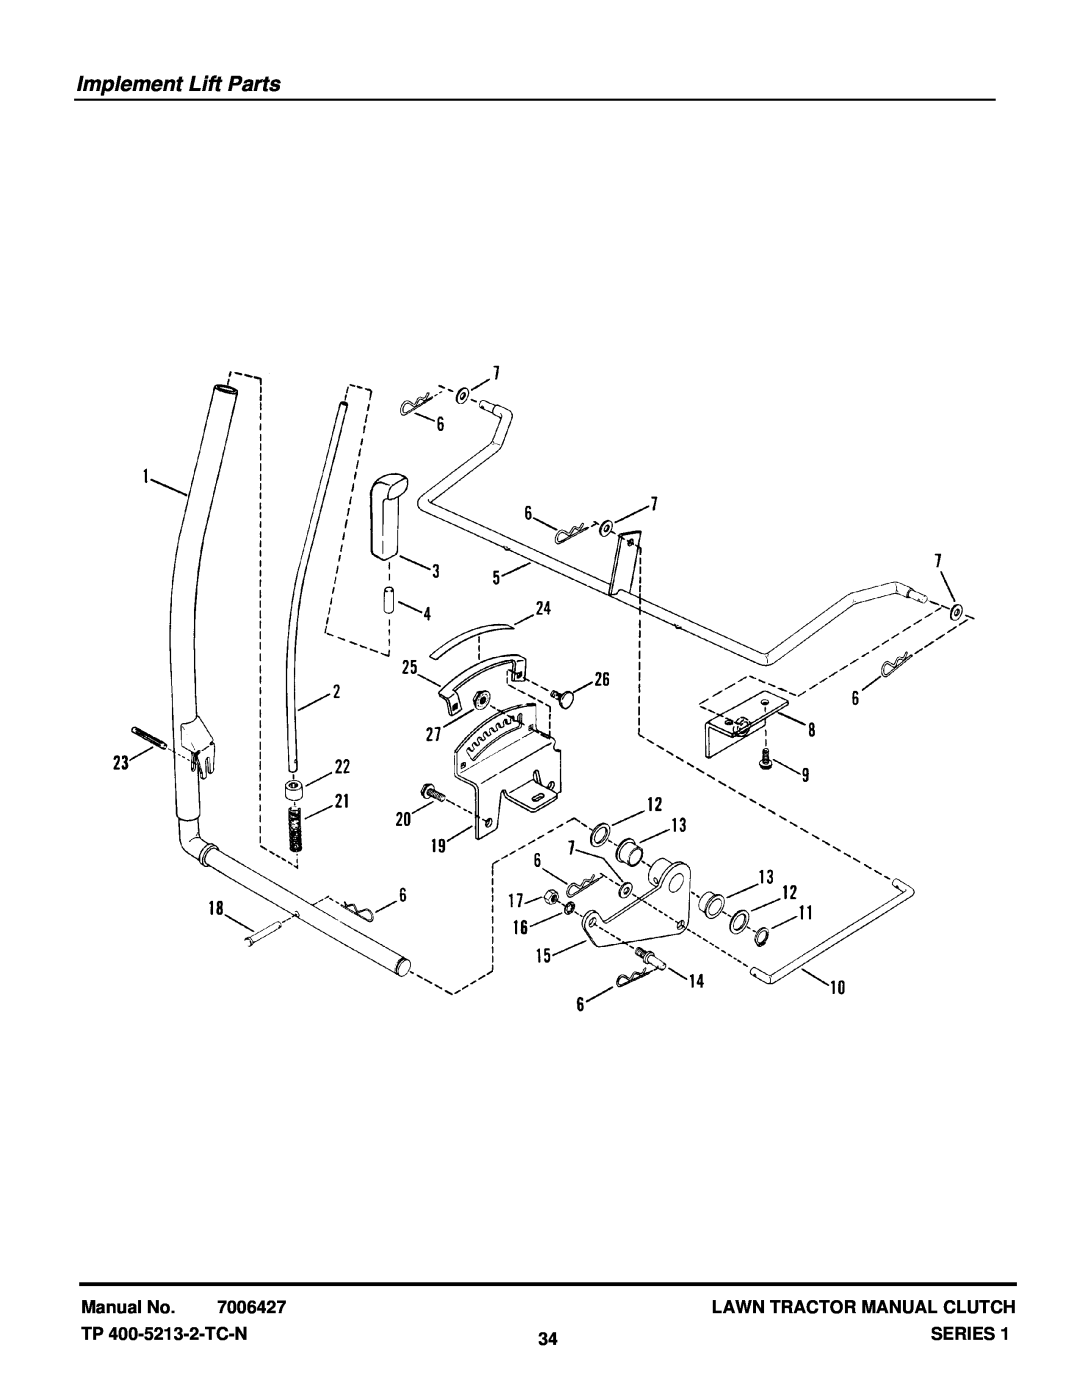 Snapper RLT140H331KV Implement Lift Parts, Manual No, 7006427, Lawn Tractor Manual Clutch, TP 400-5213-2-TC-N, Series 